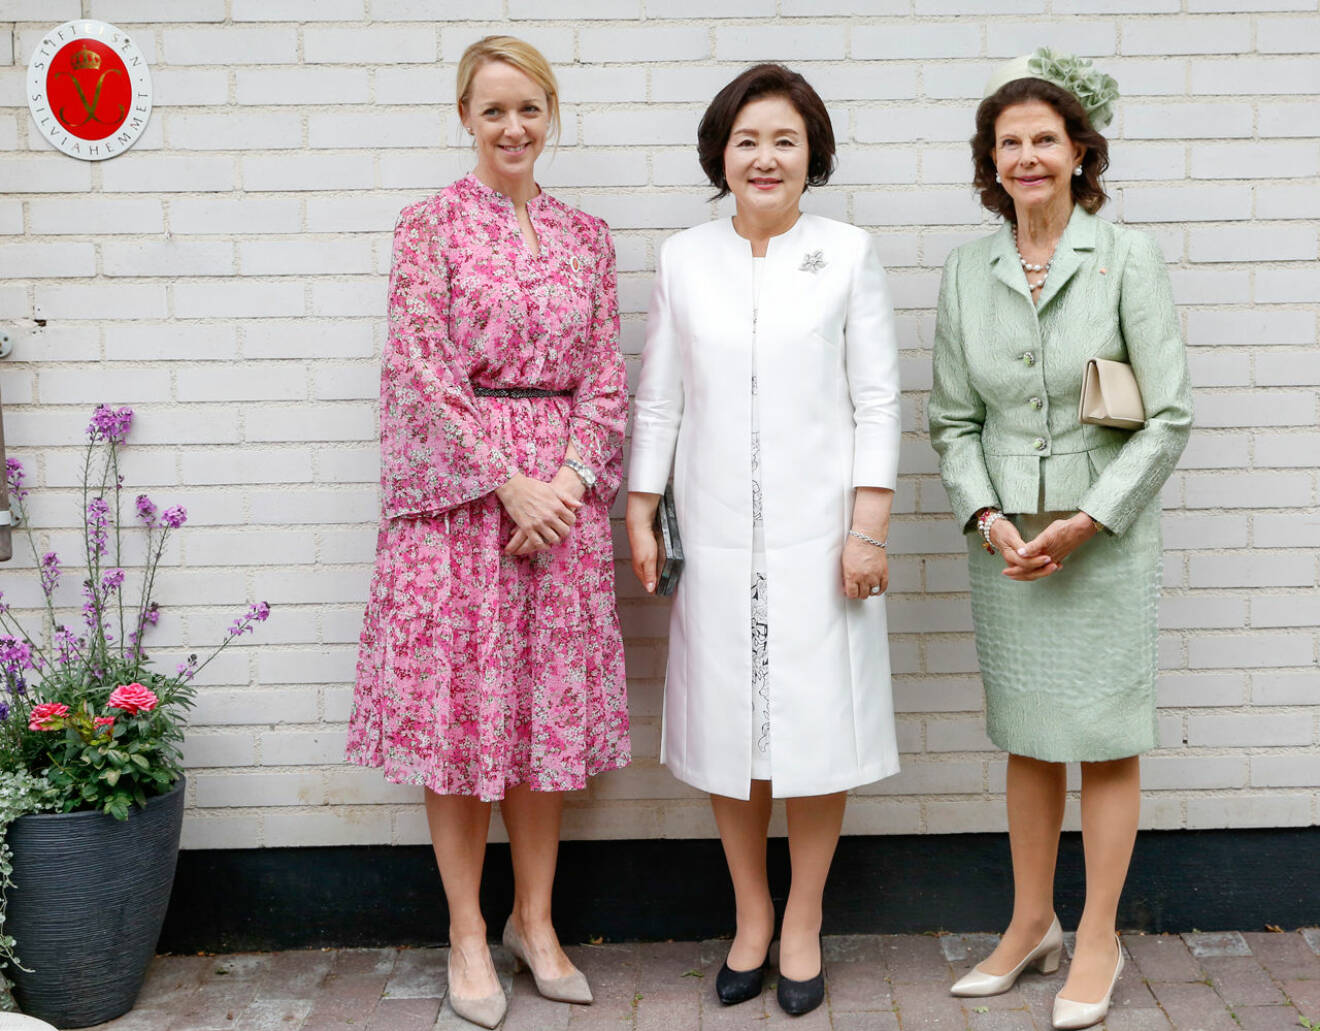 Silviahemmets verksamhetschef Petra Tegman med drottning Silvia och presidentfrun Kim Jung-Sook.